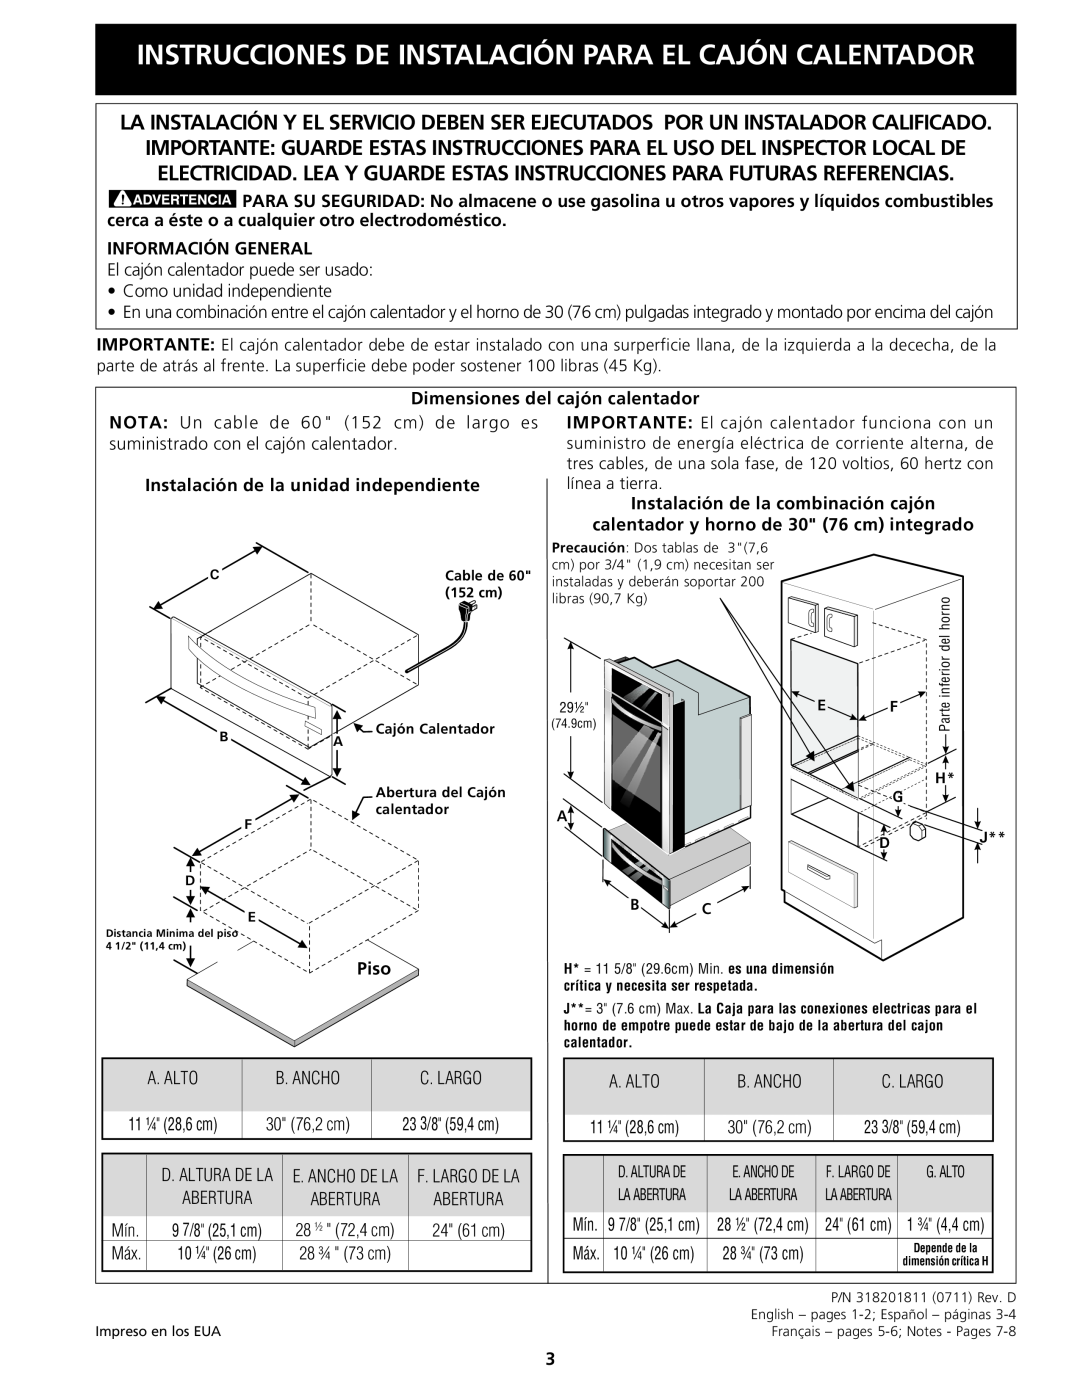 Electrolux 318201811 Instrucciones De Instalación Para El Cajón Calentador, Información General, Piso 